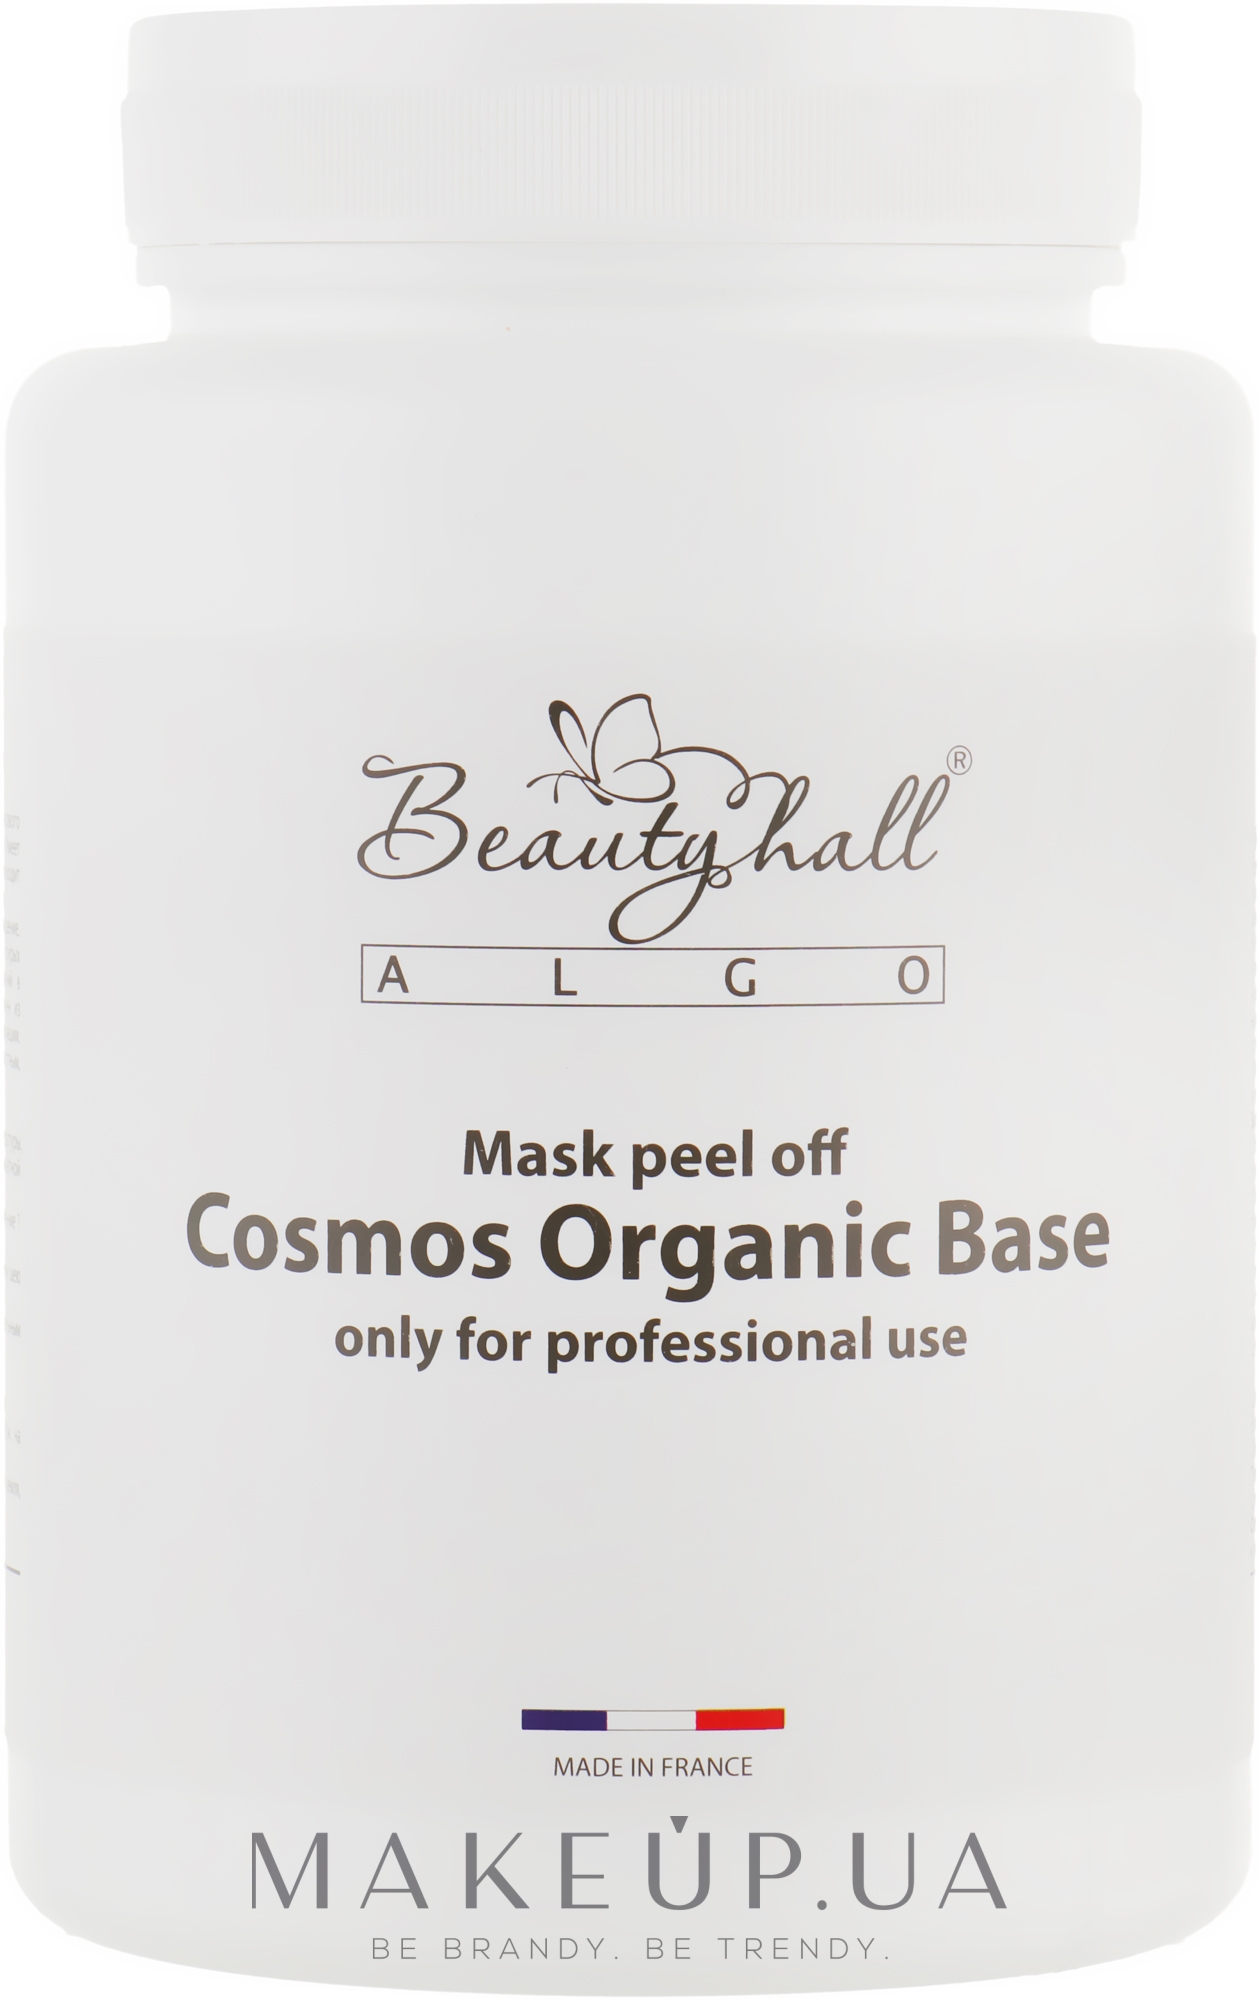 Альгинатная маска "Базовая" - Beautyhall ALGO peel off mask Cosmos Organic Base — фото 200g